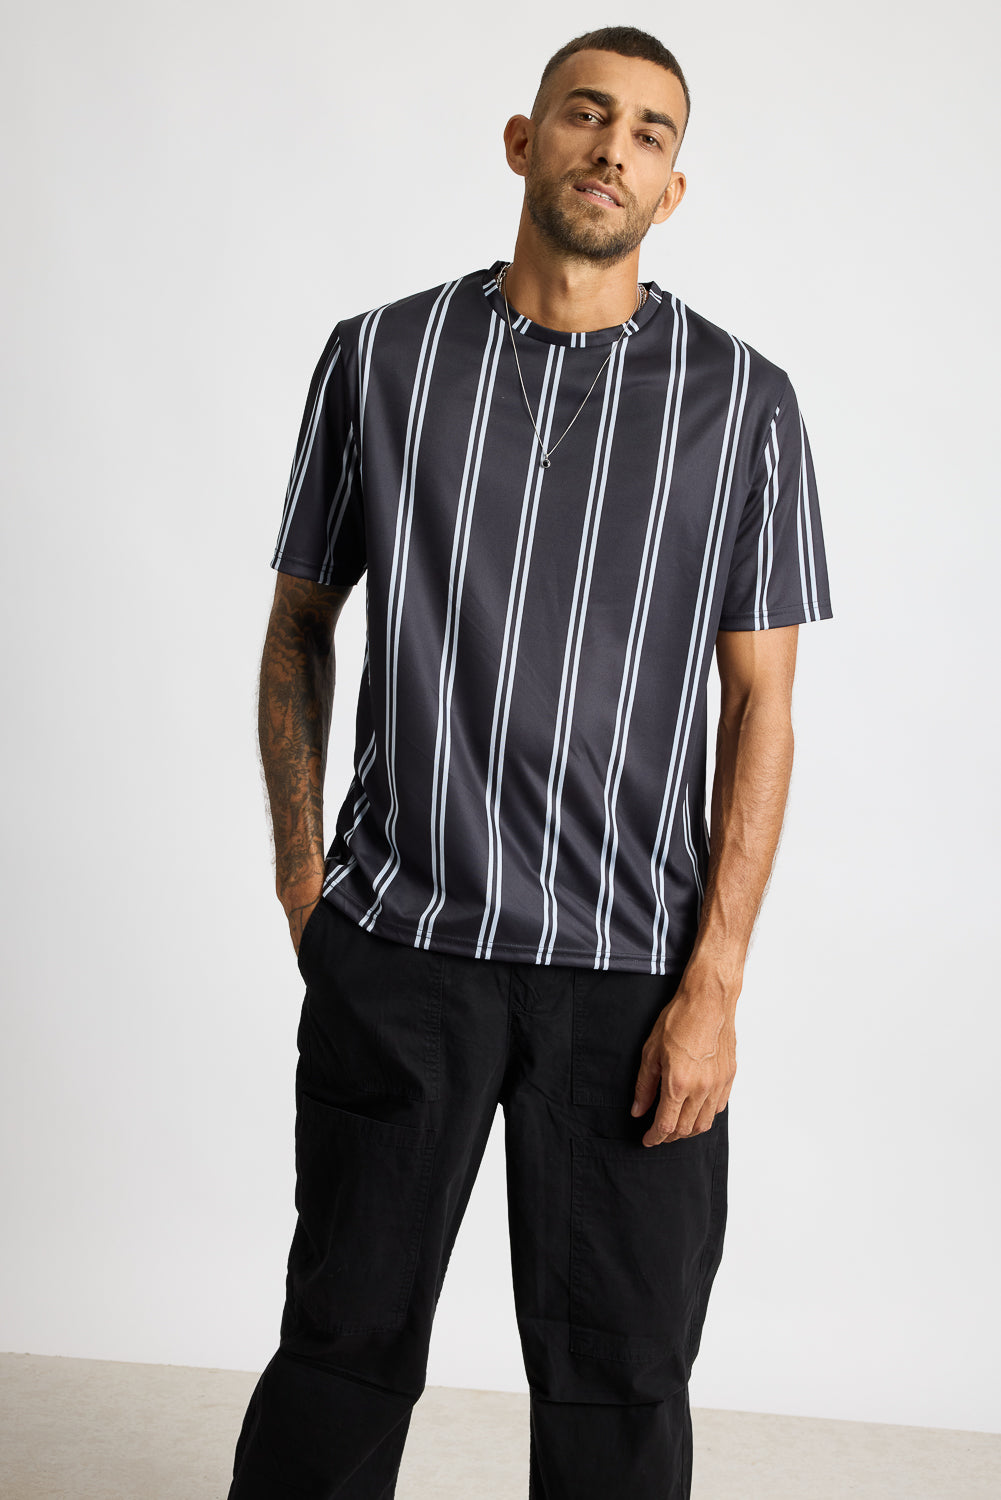 AOP Men's T-shirt - Black/White Stripes